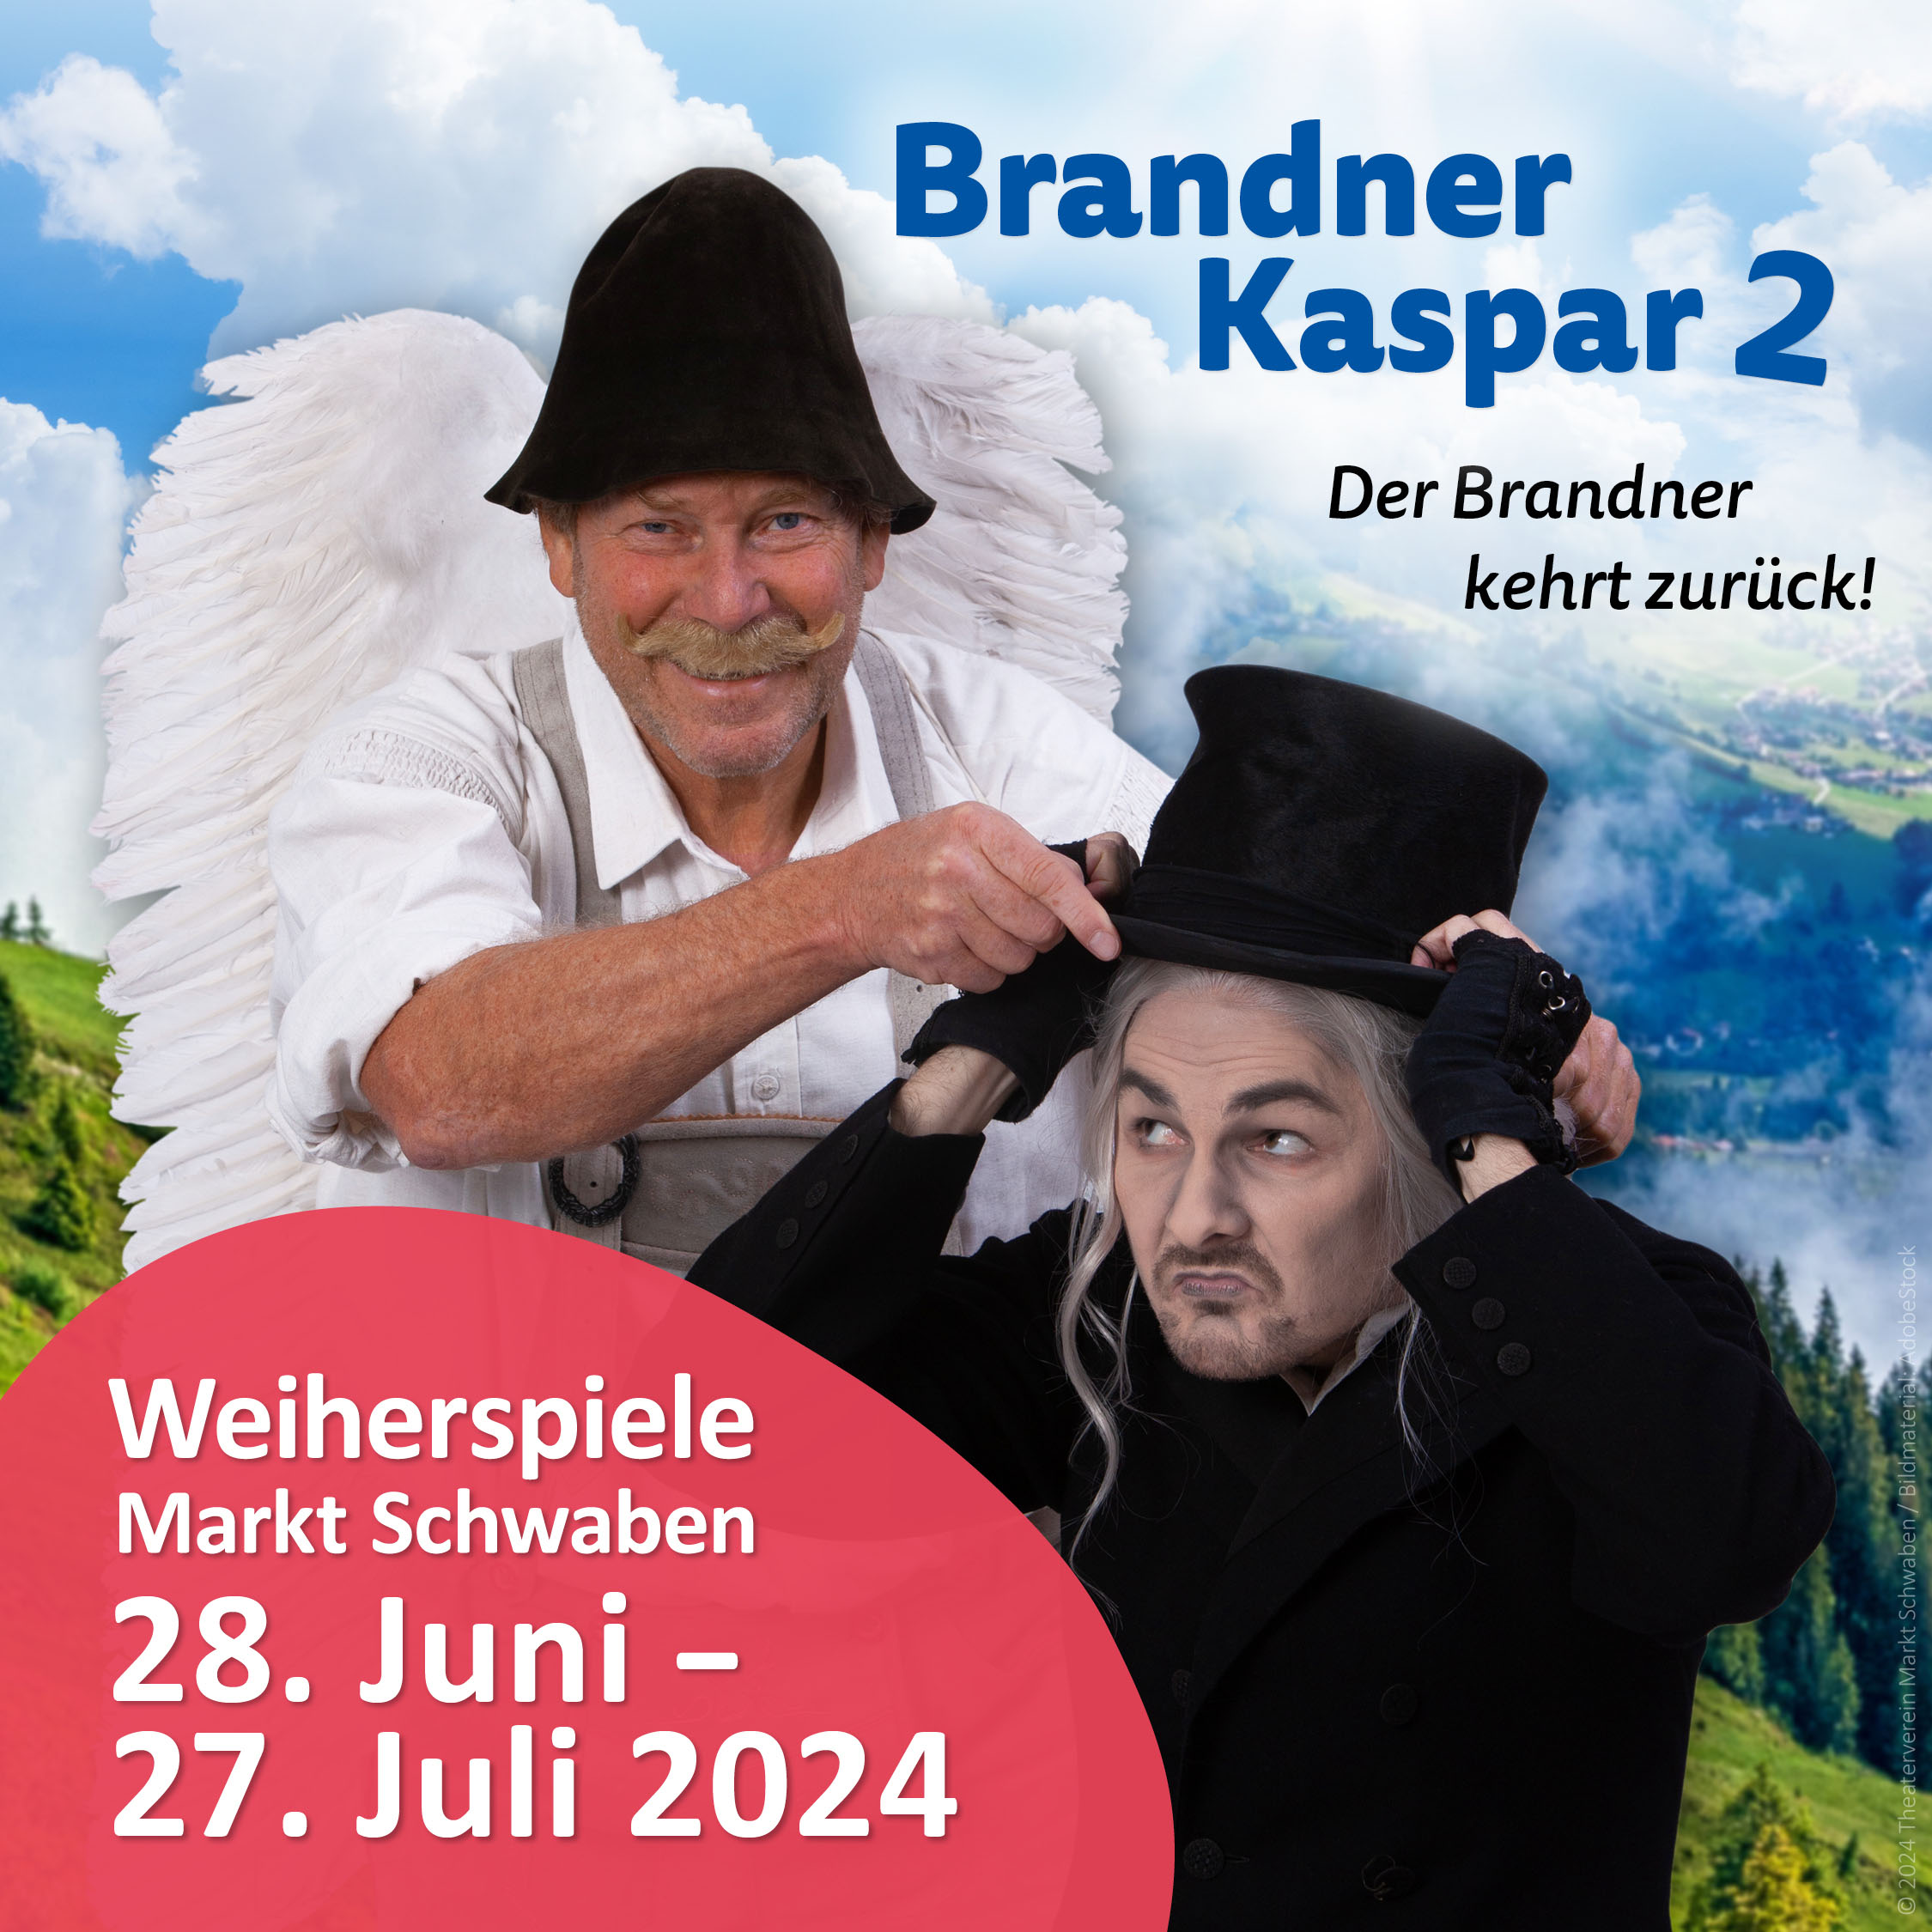 Weiherspiele 2024: Brandner Kaspar 2 - Der Brandner kehrt zurück!